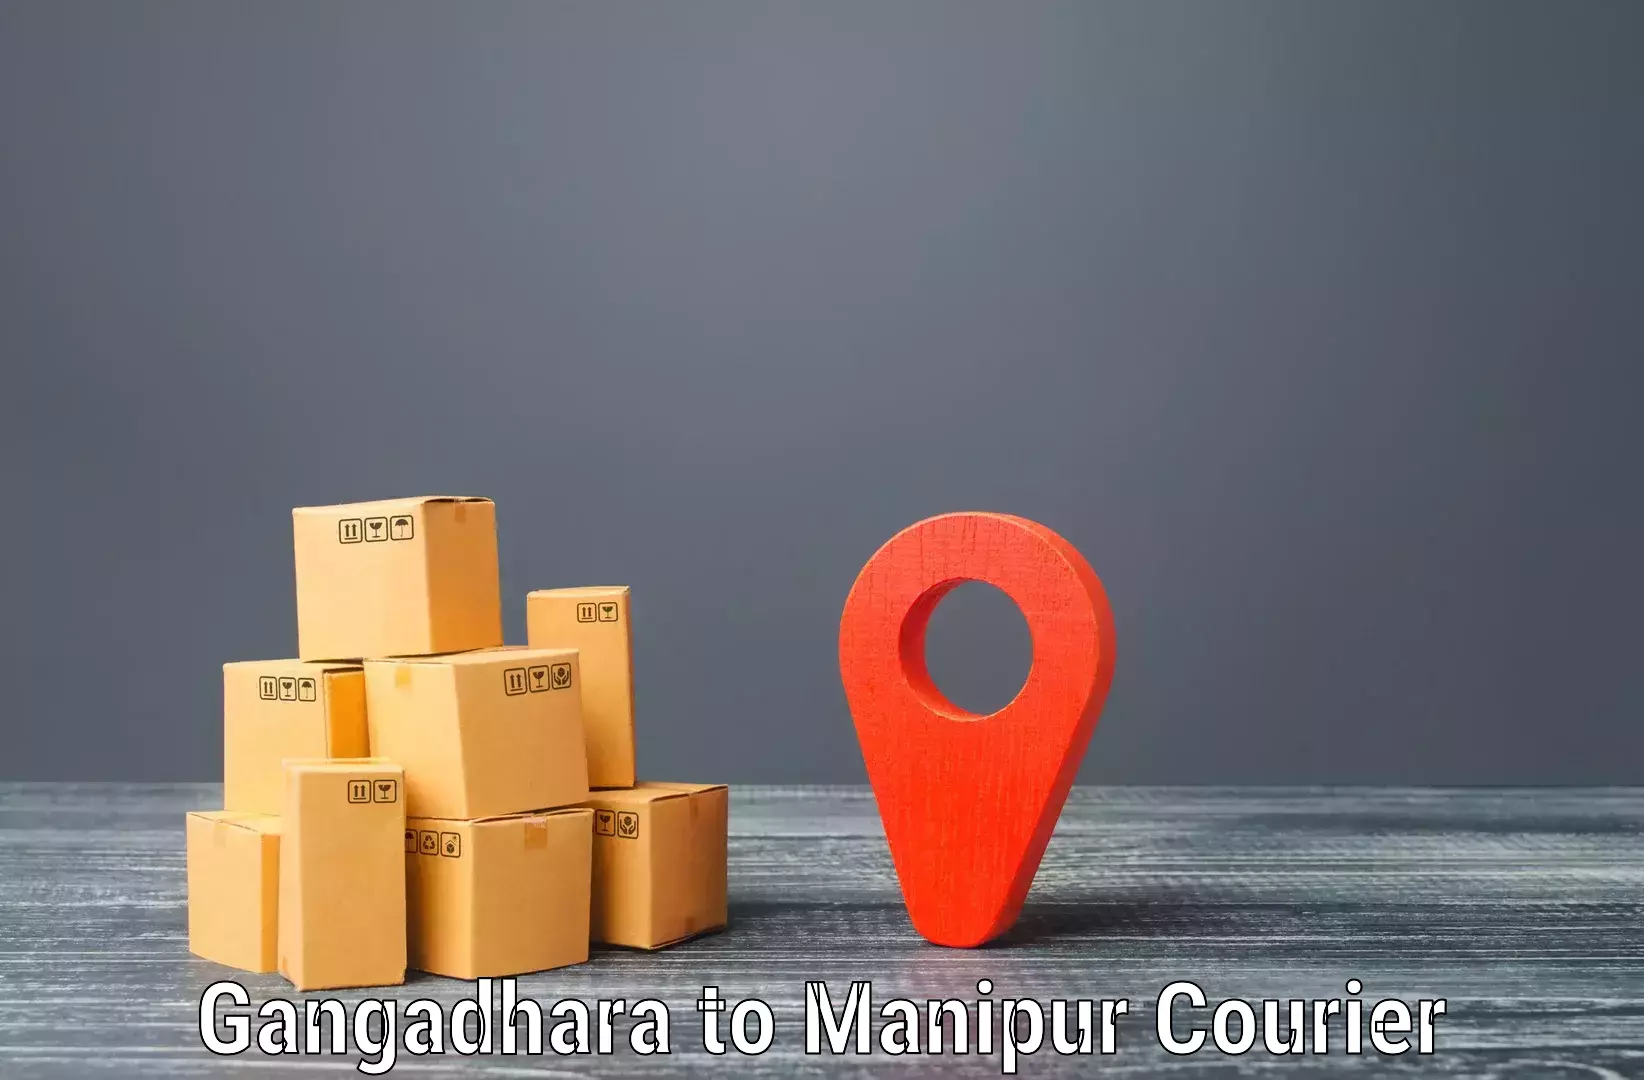 Tech-enabled shipping Gangadhara to Kanti